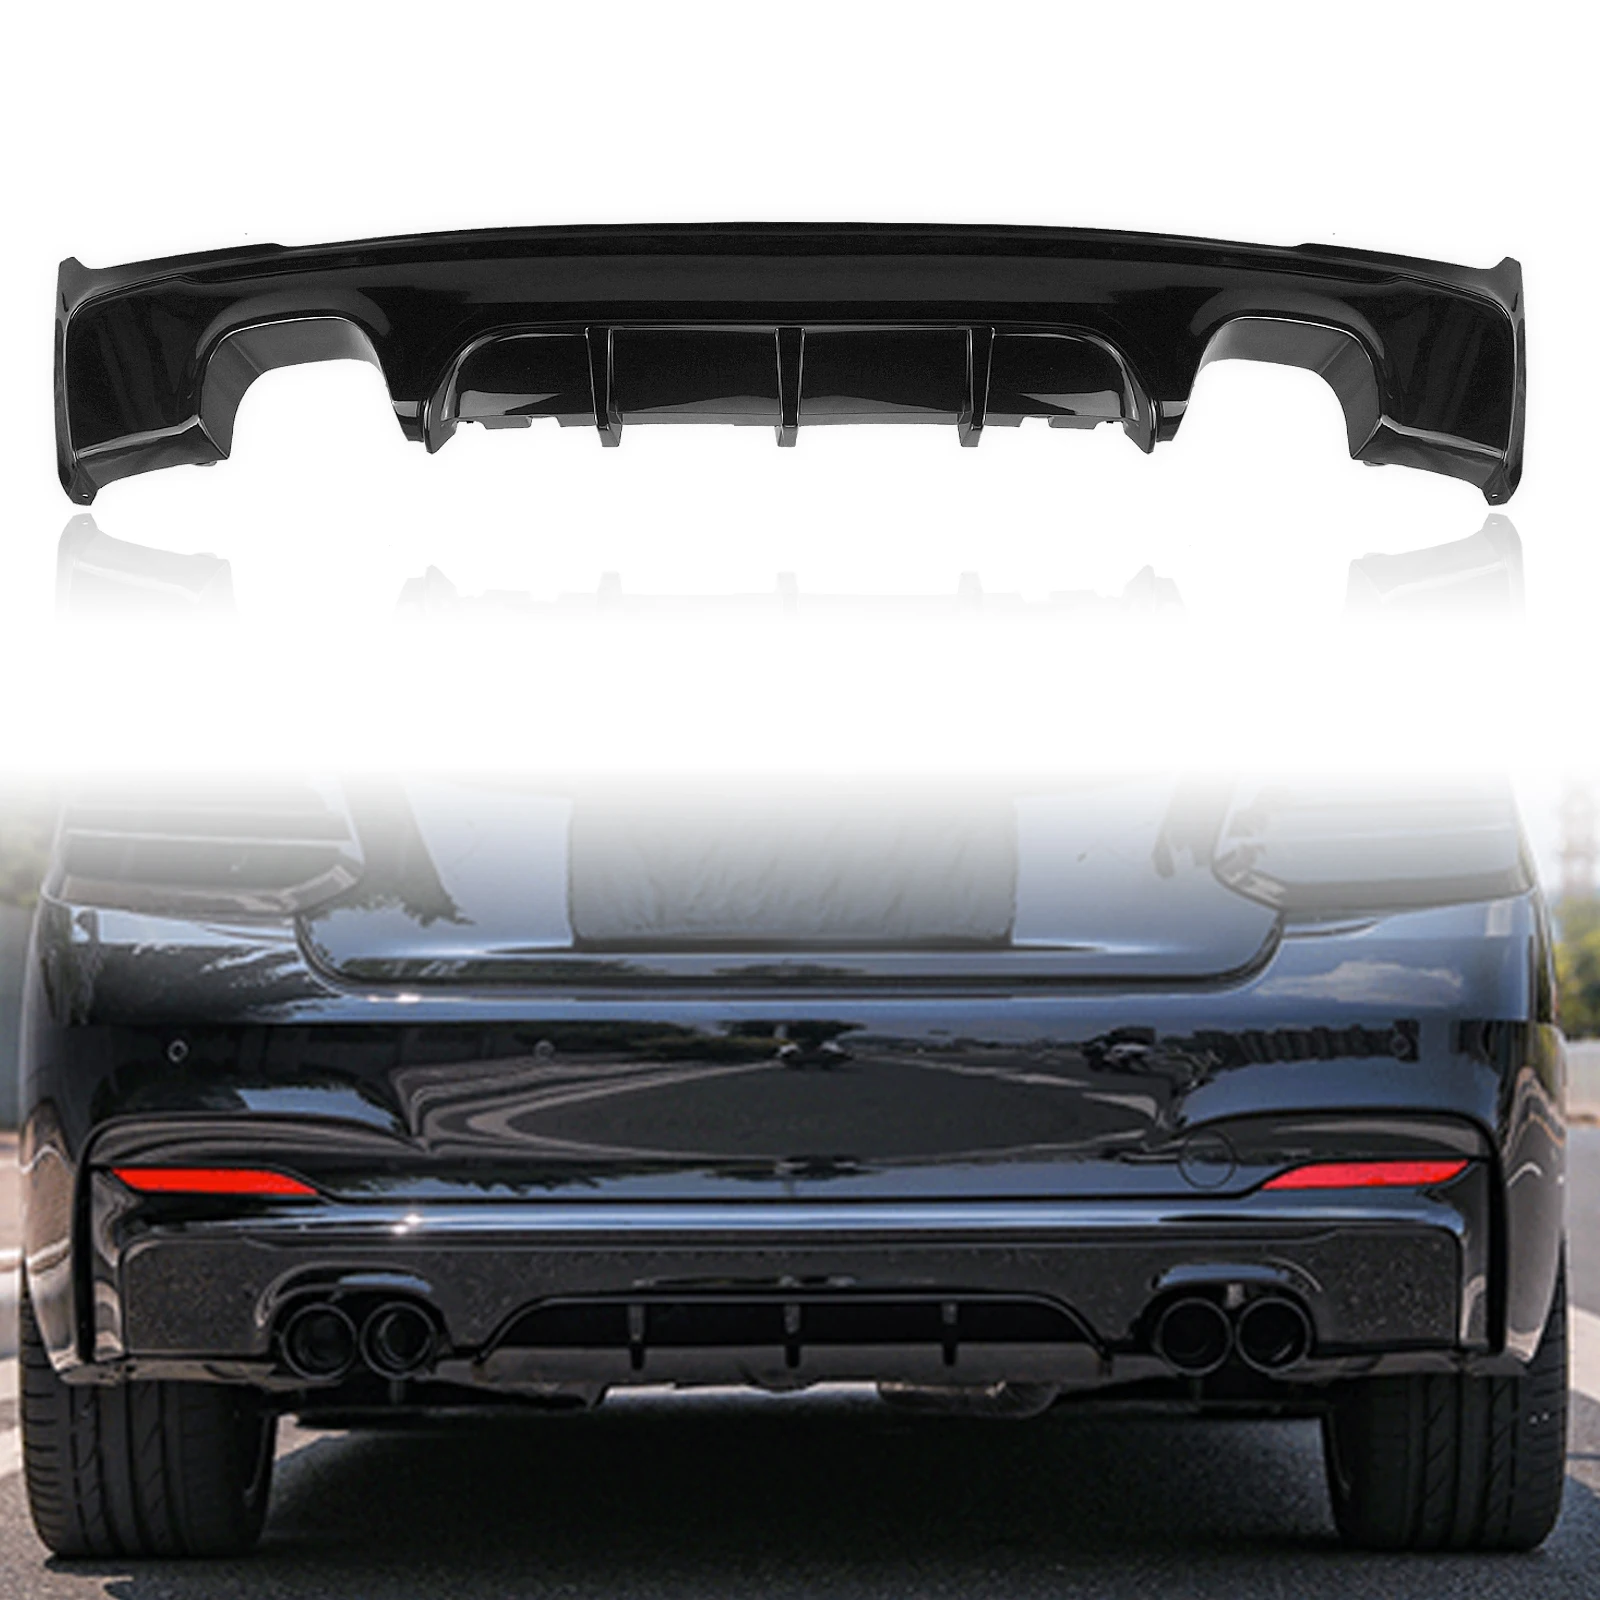 

For BMW 2 Series F22 F23 M235i M240i M Sport 2014-2021 Rear Bumper Diffuser Lip Glossy Black Quad Exhaust Spoiler Plate Splitter